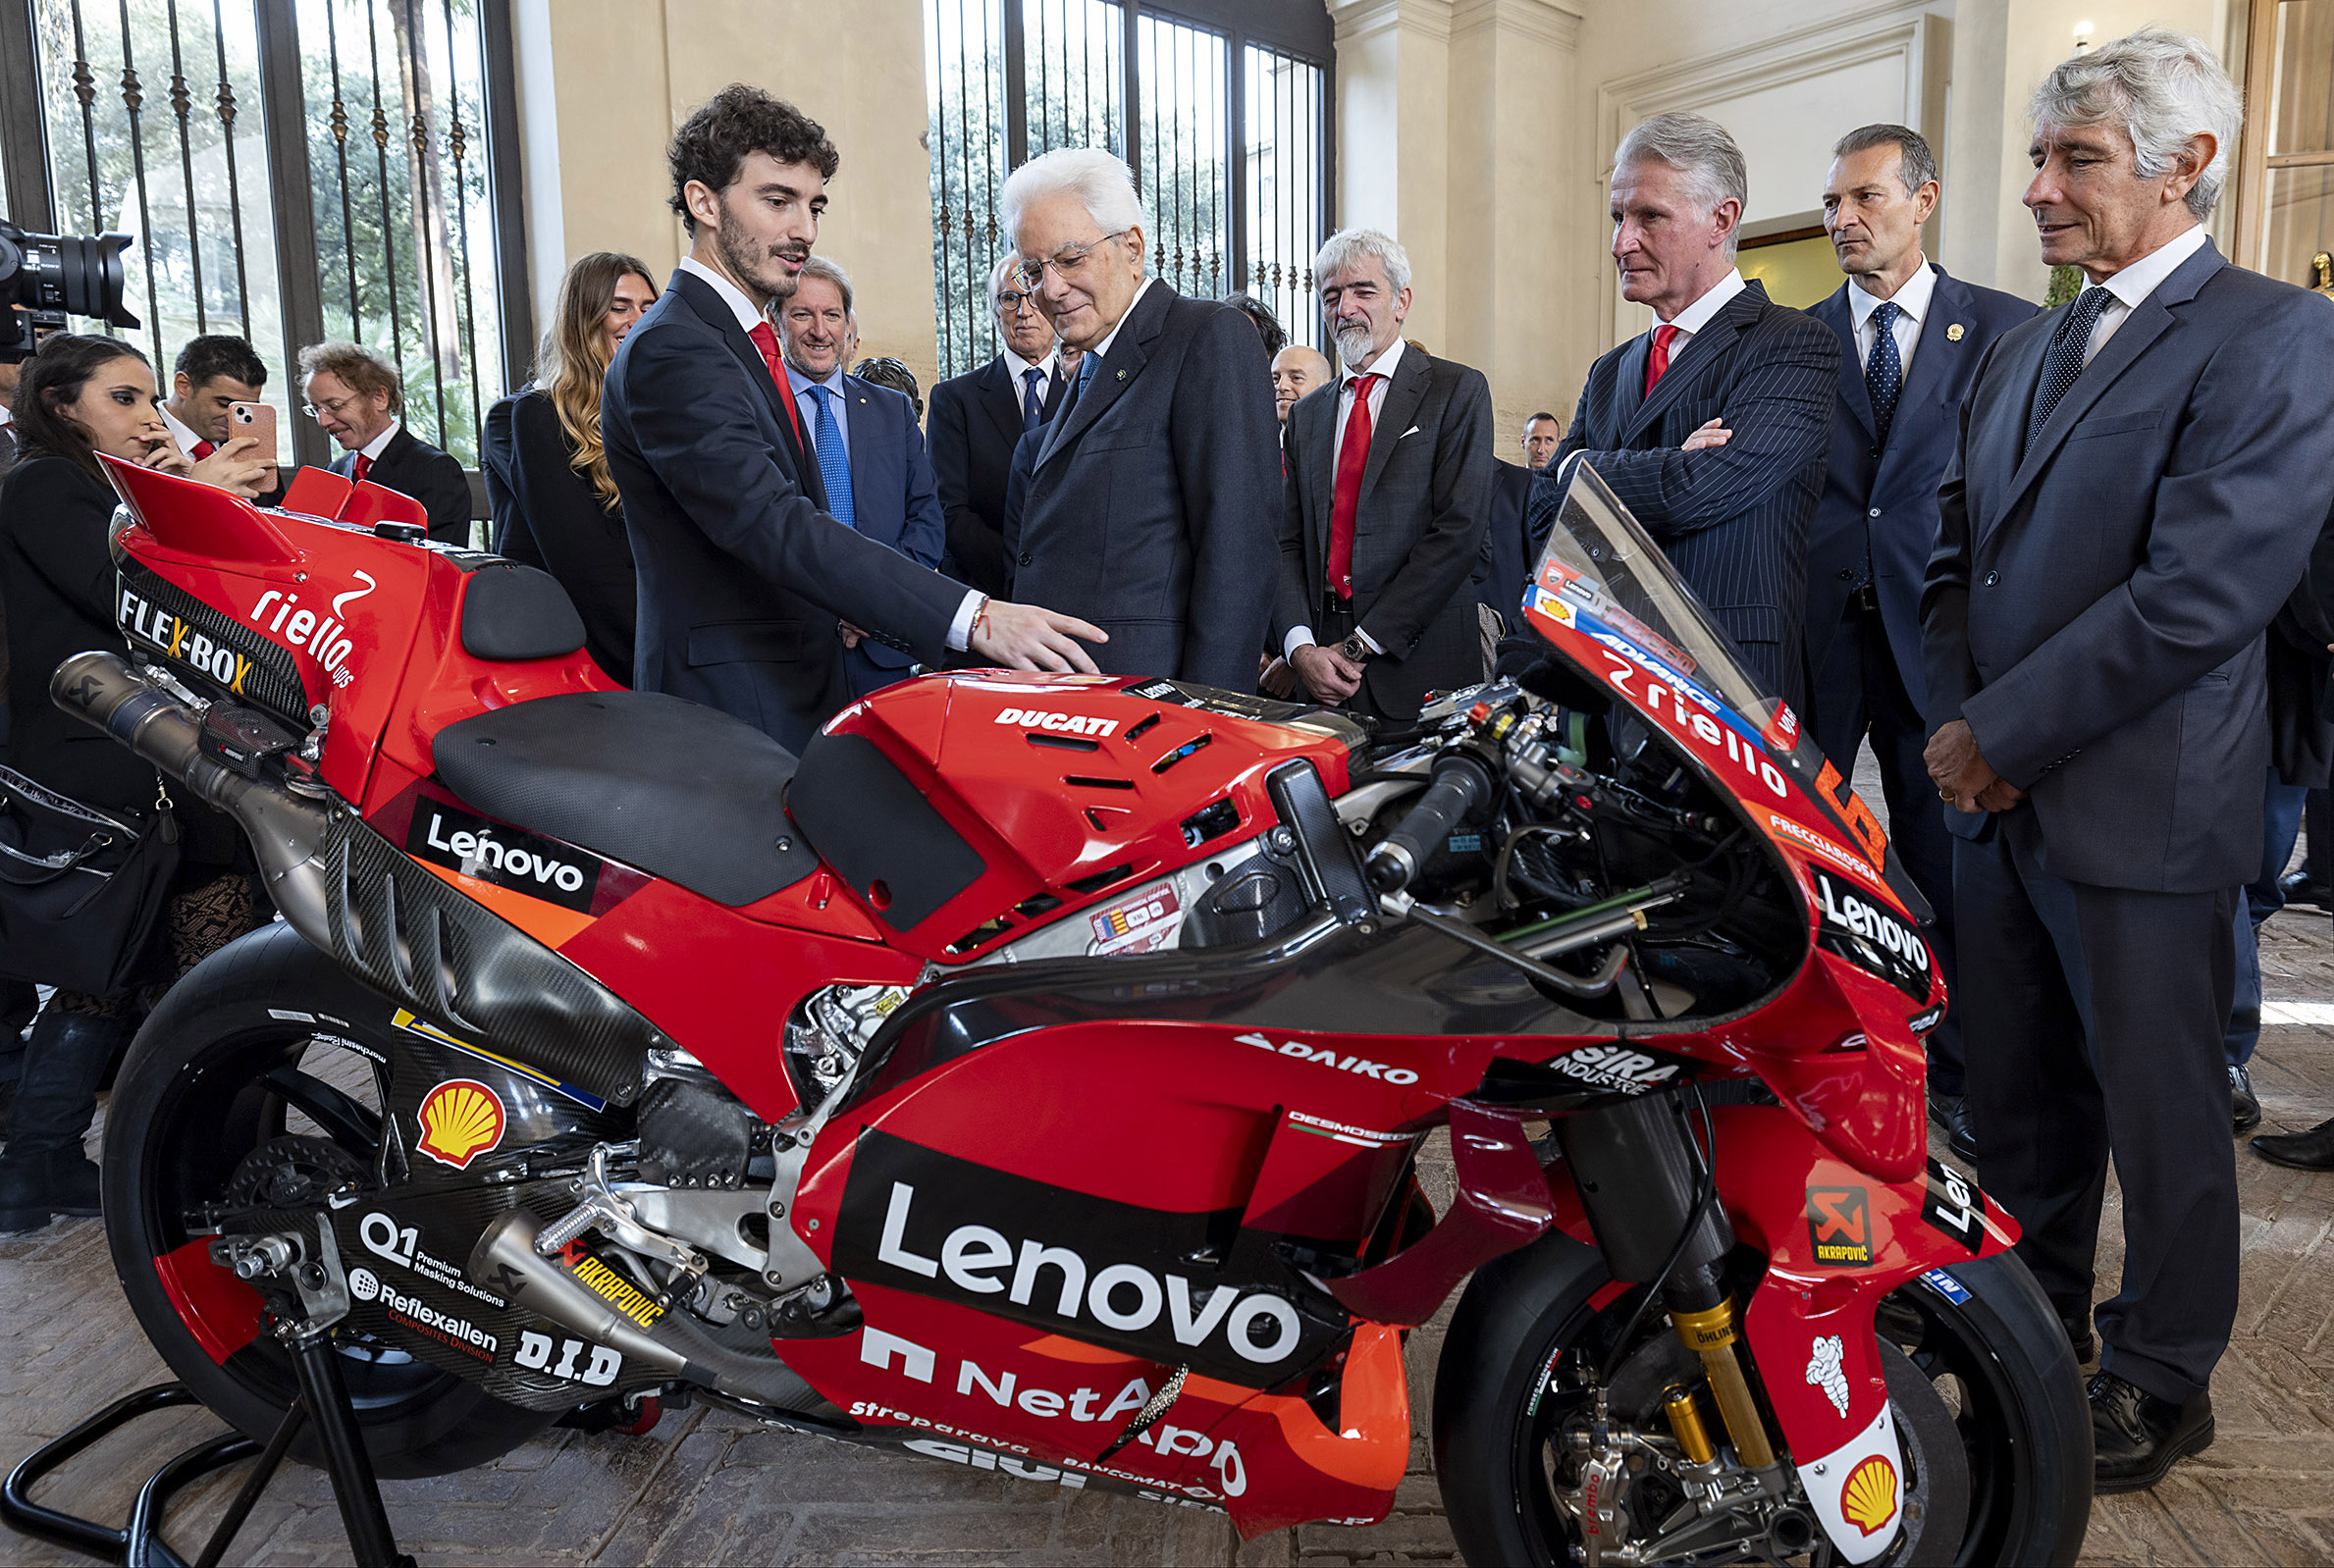 Francesco Bagnaia and a Ducati  CONI and FMI delegation at the Quirinale with Sergio Mattarella 02 UC460493